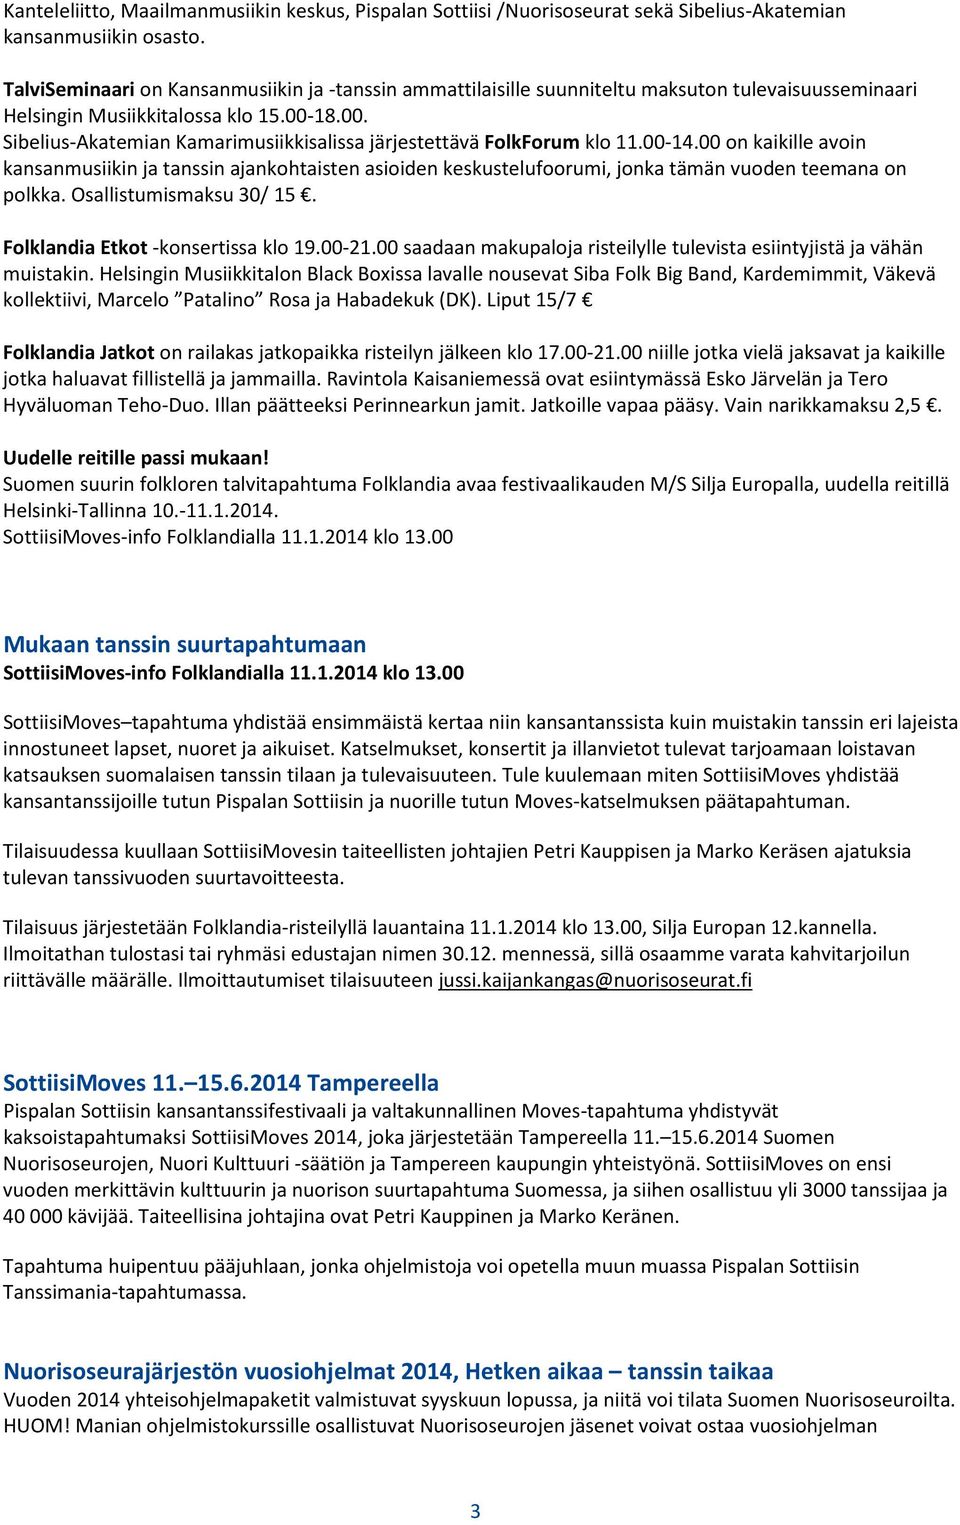 18.00. Sibelius-Akatemian Kamarimusiikkisalissa järjestettävä FolkForum klo 11.00-14.